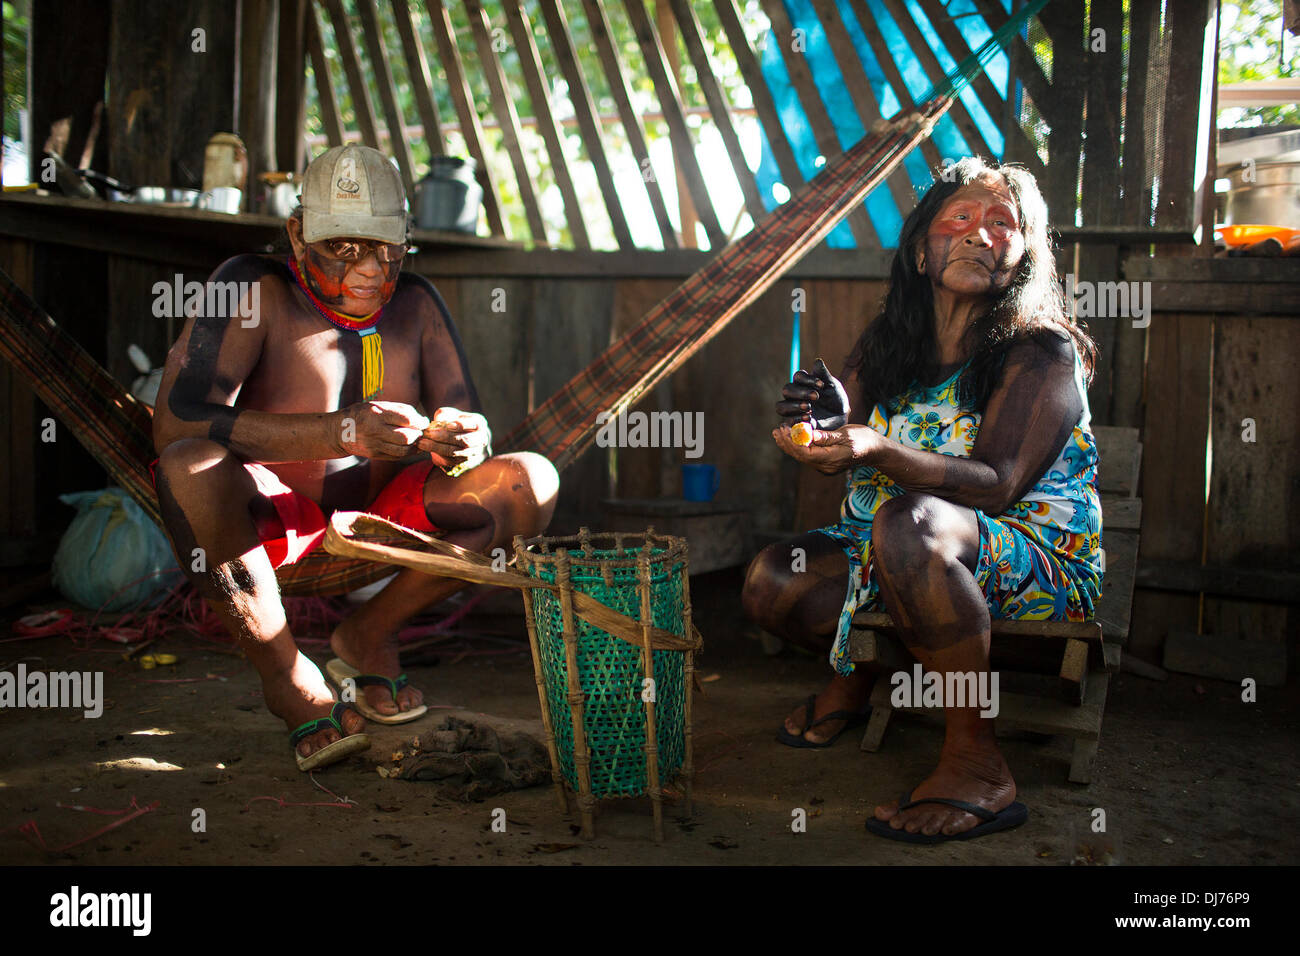 3 mai 2013 - Poti-Kro, Para, Brésil - Bepoti et son épouse Kopri sont les deux anciens d'Poti-Kro. C'est la responsabilité des aînés de transmettre les mythes et histoires de la tribu. Les villageois ne sont pas prêts à partager ces histoires à l'extérieur, parce qu'ils sont considérés comme les anciens' 'propriété.' Xikrin personnes vivent sur l'Bacaja, un affluent de la rivière Xingu, où la construction du barrage de Belo Monte est à la pointe de la construction. Certains scientifiques affirment que le niveau d'eau du Bacaja diminue rapidement en raison du barrage. (Crédit Image : © Taylor Weidman/ZUMA/ZUMAPRESS.com) fil Banque D'Images